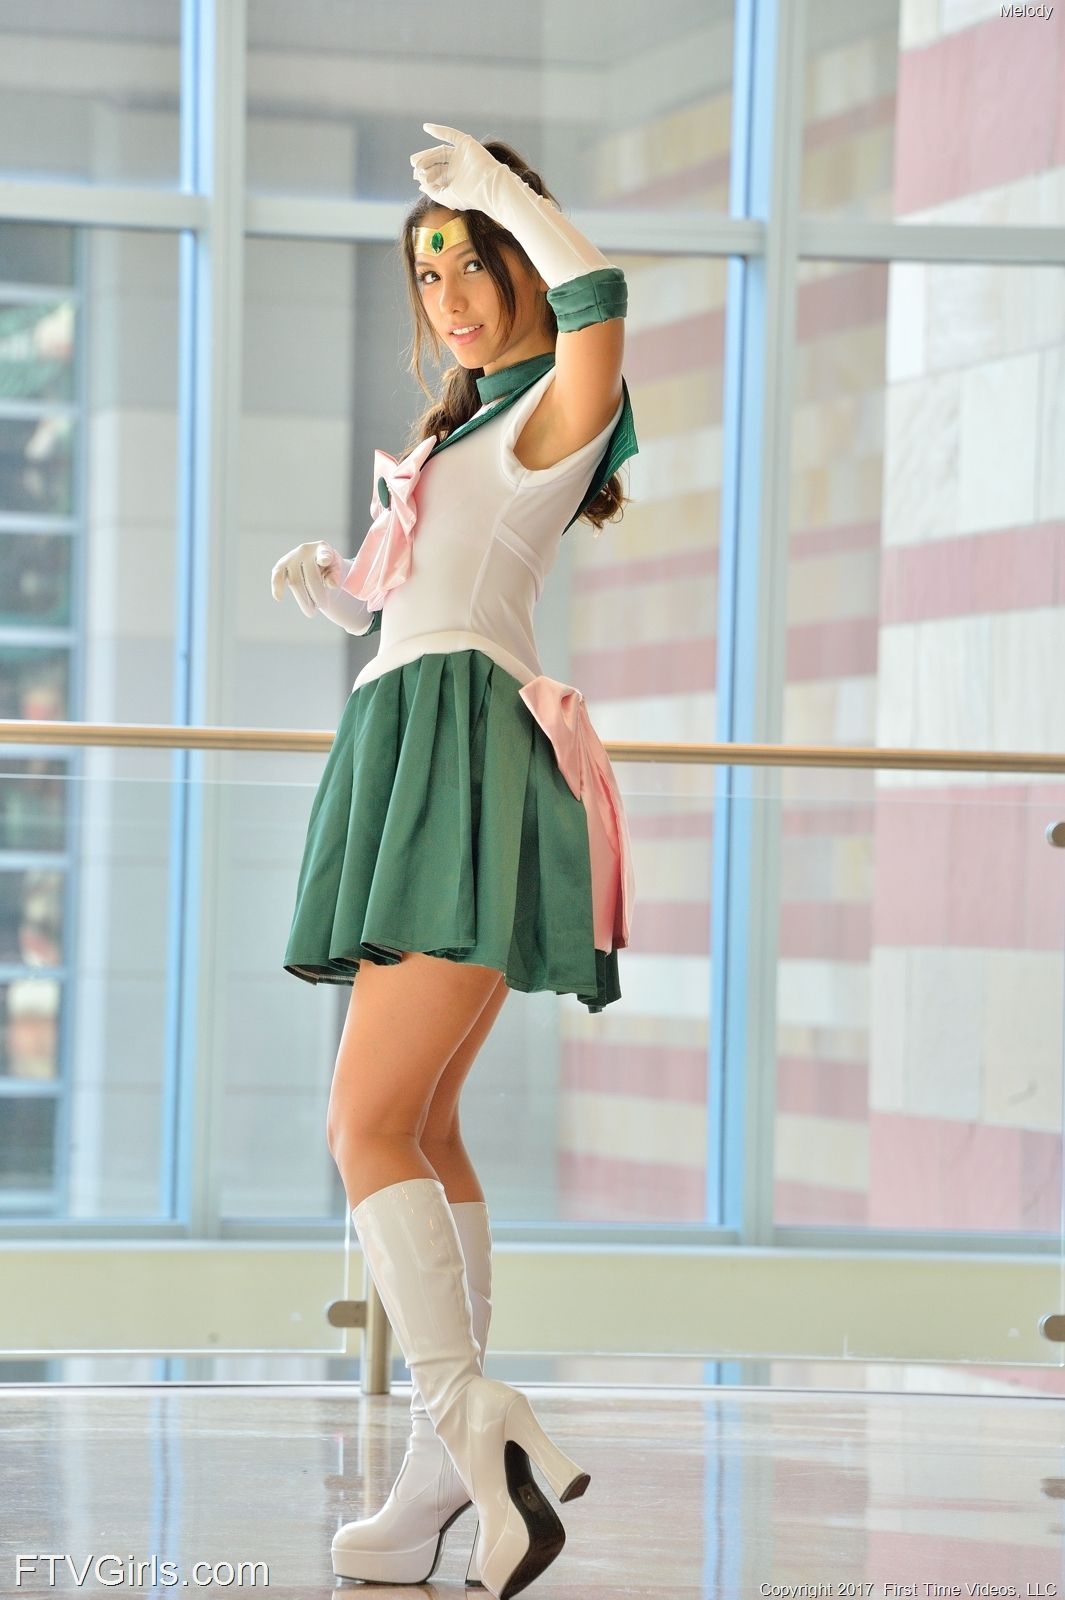 Melody Wylde as Sailor Jupiter 58